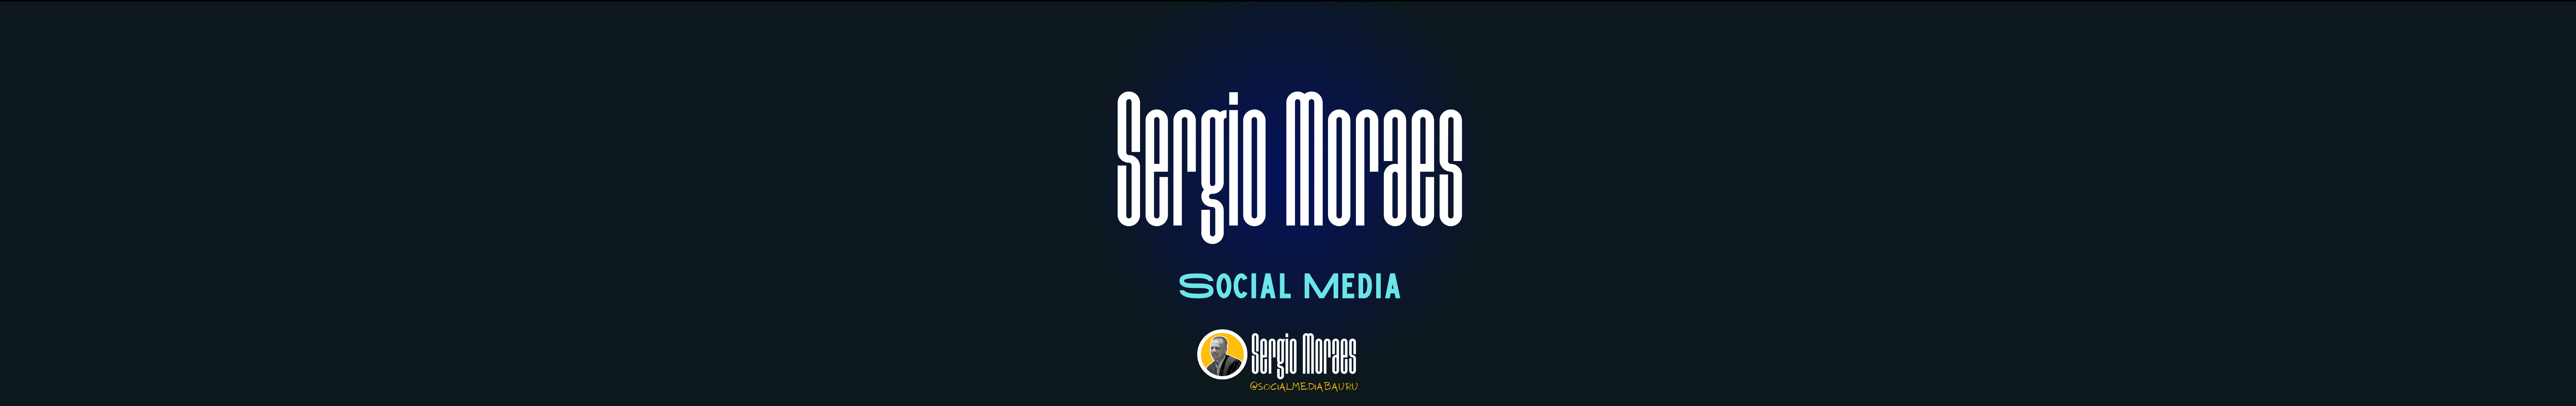 Sergio Moraes's profile banner